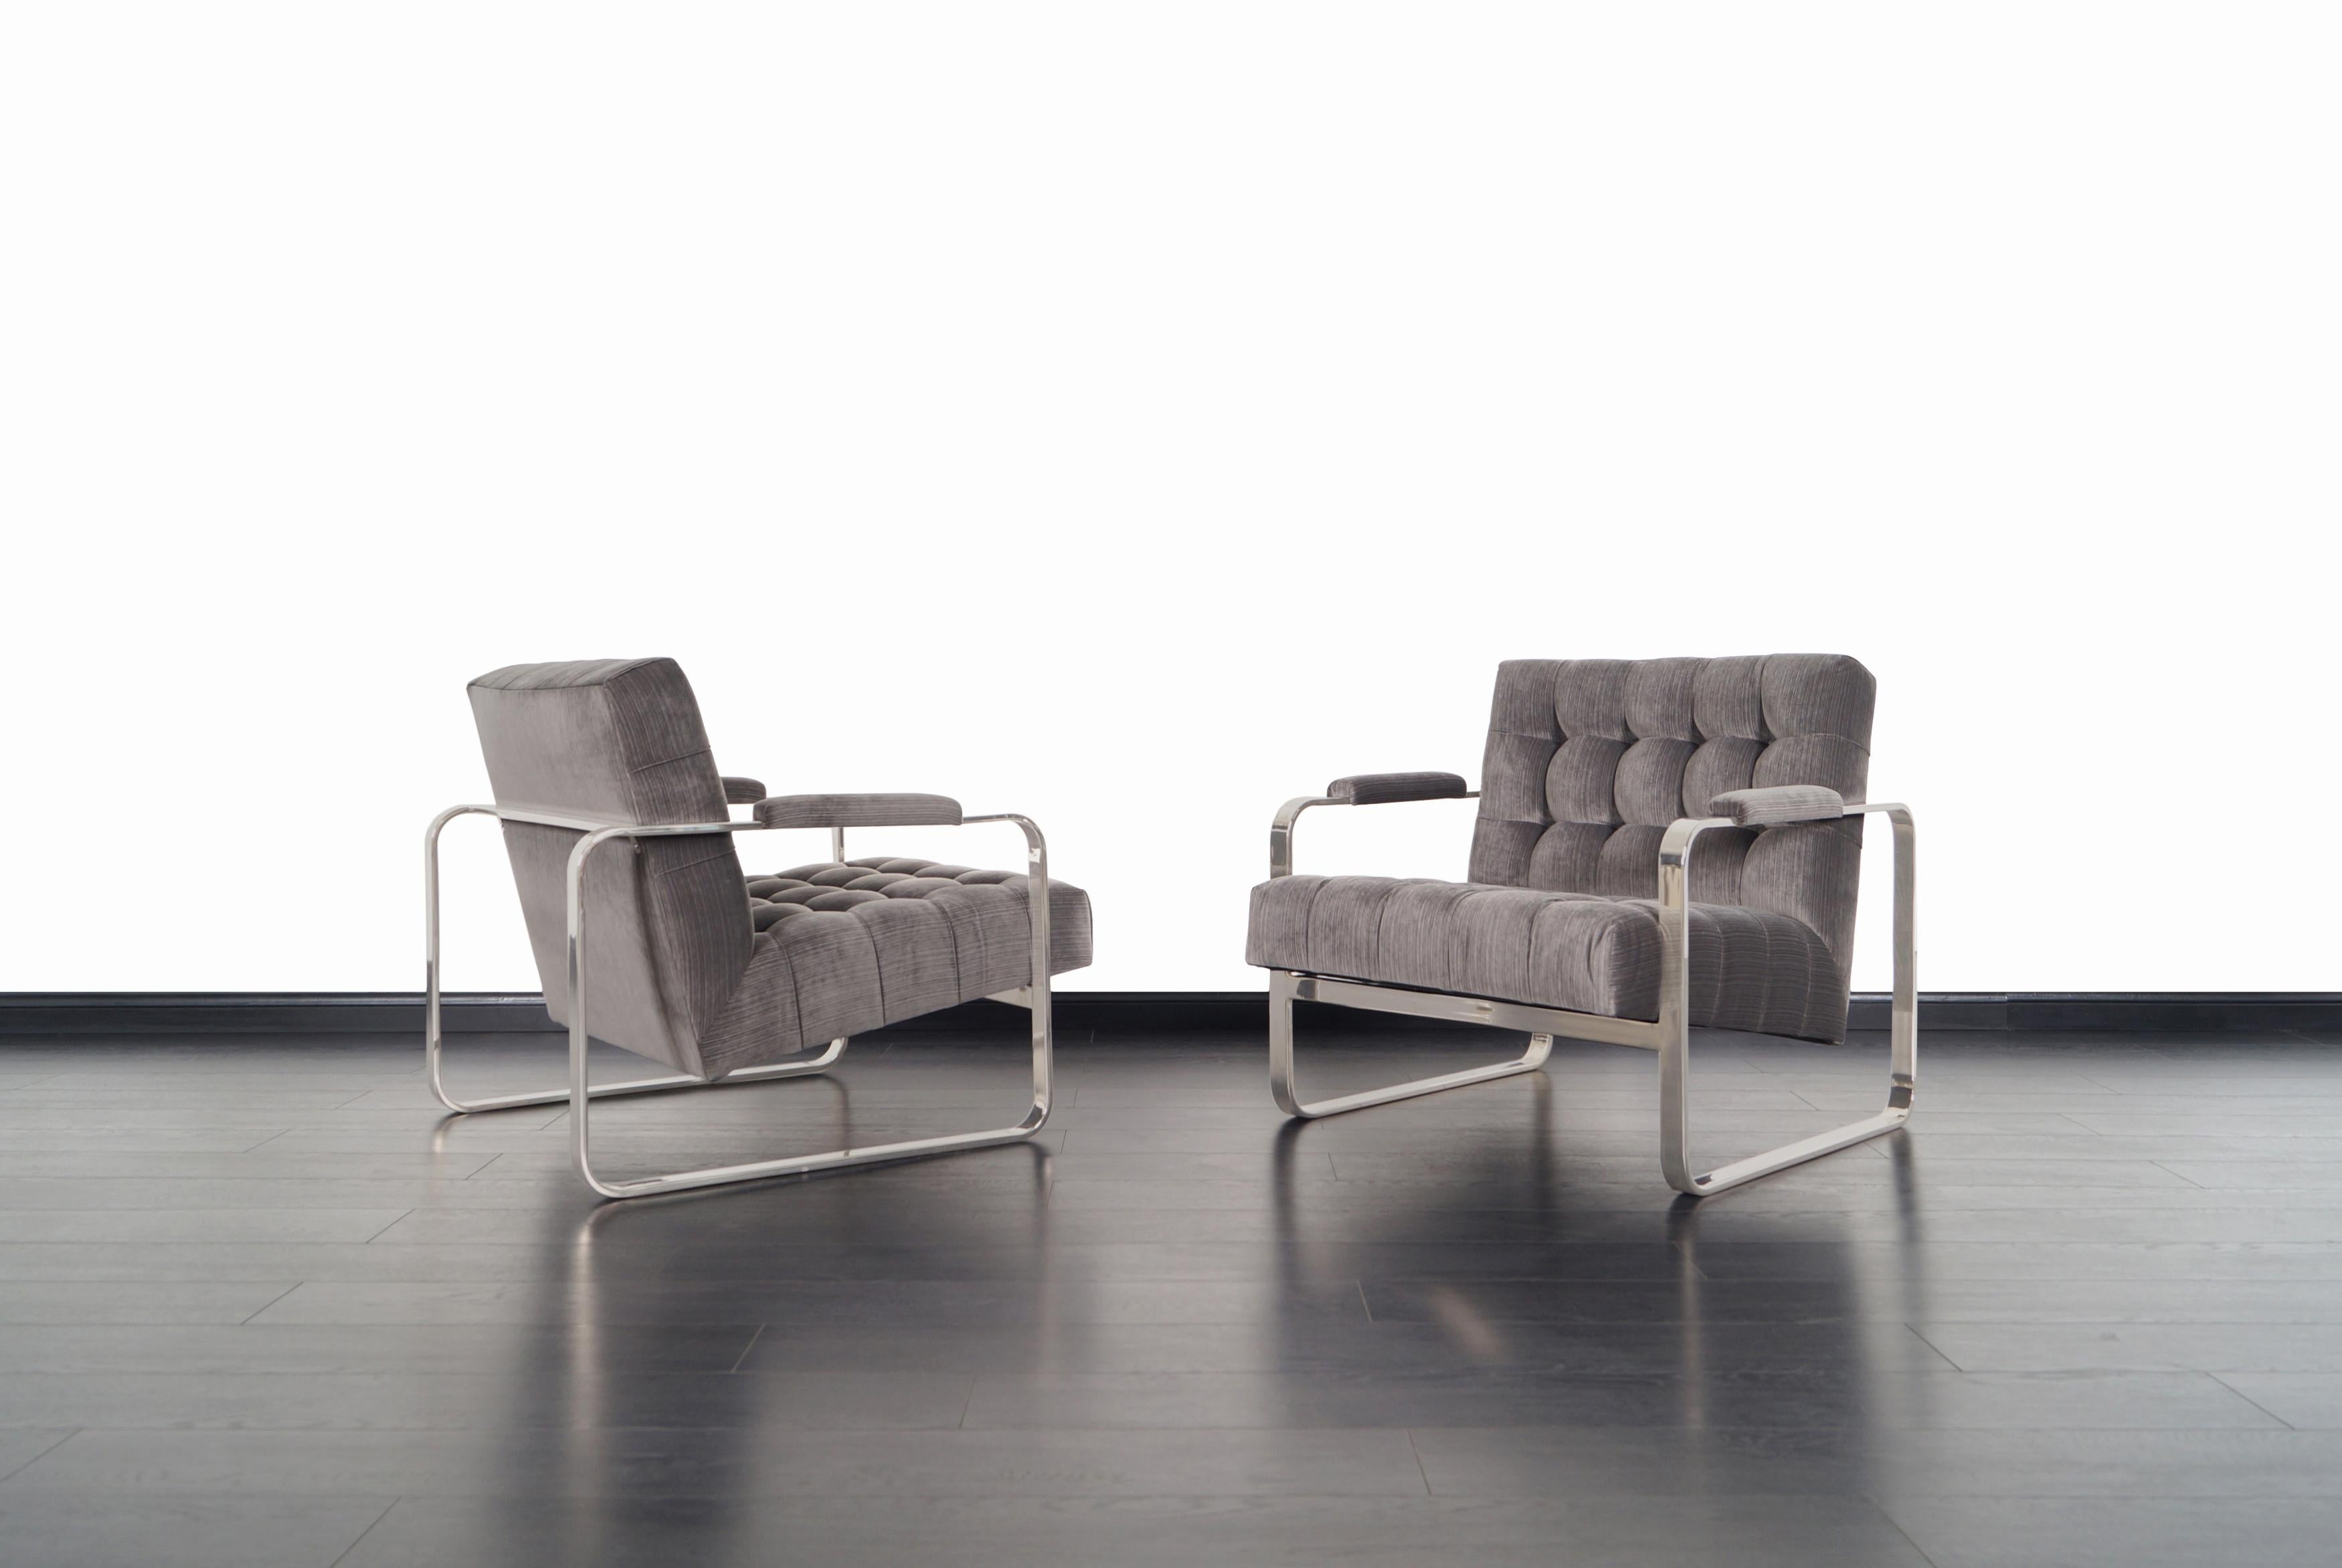 Ein atemberaubendes Paar Vintage-Sessel aus Nickel, entworfen von Milo Baughman für Thayer Coggin. Die Art und Weise, wie der Samtsitz im Inneren des vernickelten Gestells zu schweben scheint, verleiht dem Design aus jedem Blickwinkel eine